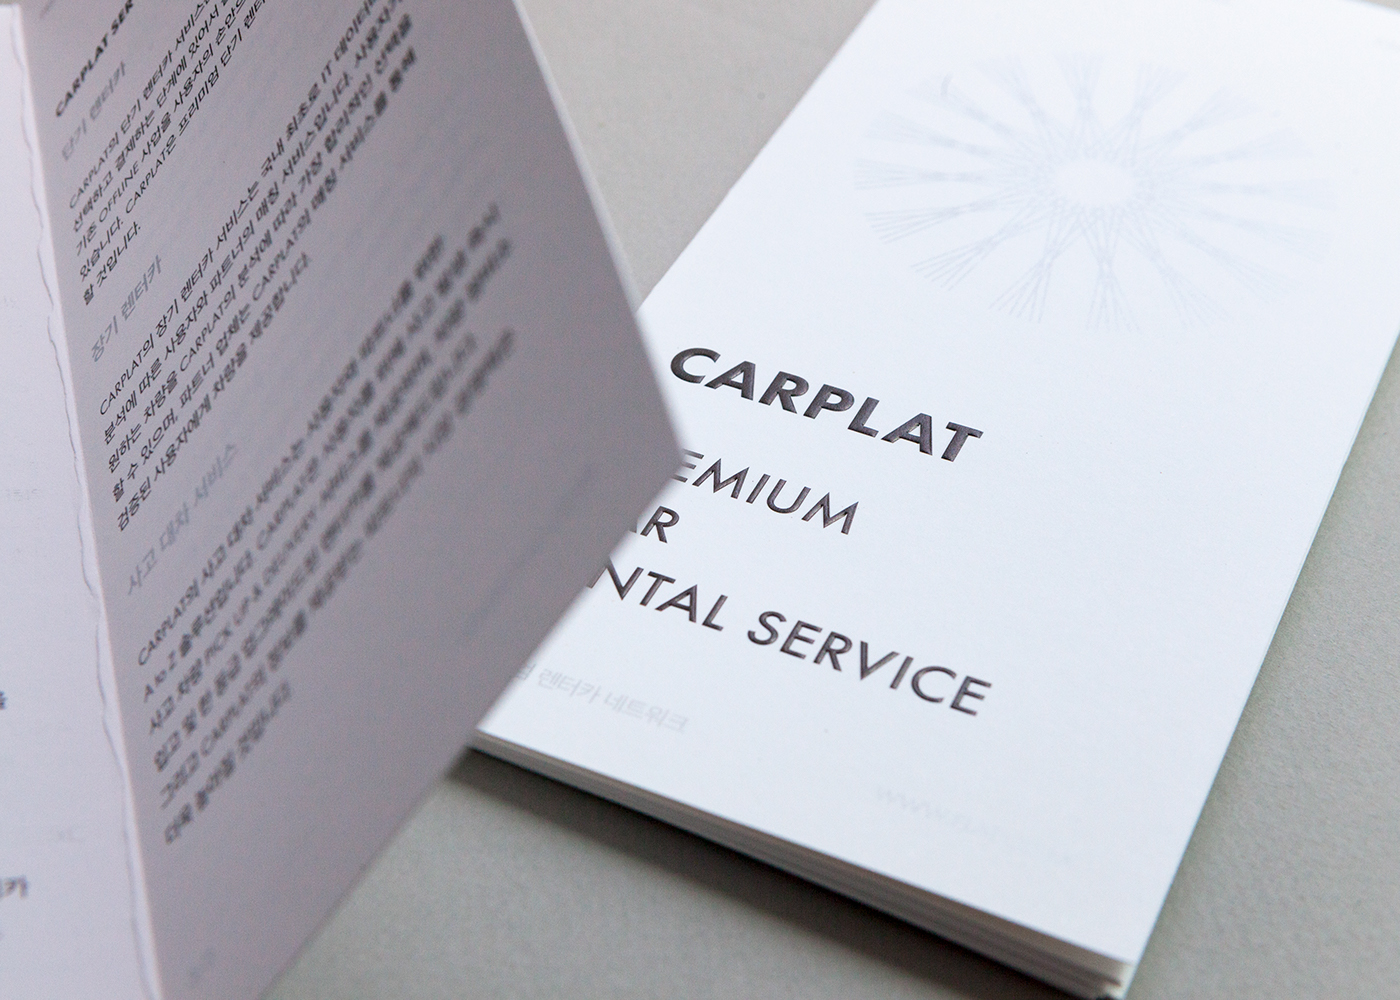 carplat brochure pamphlet silver black car typo paper leaflet inform